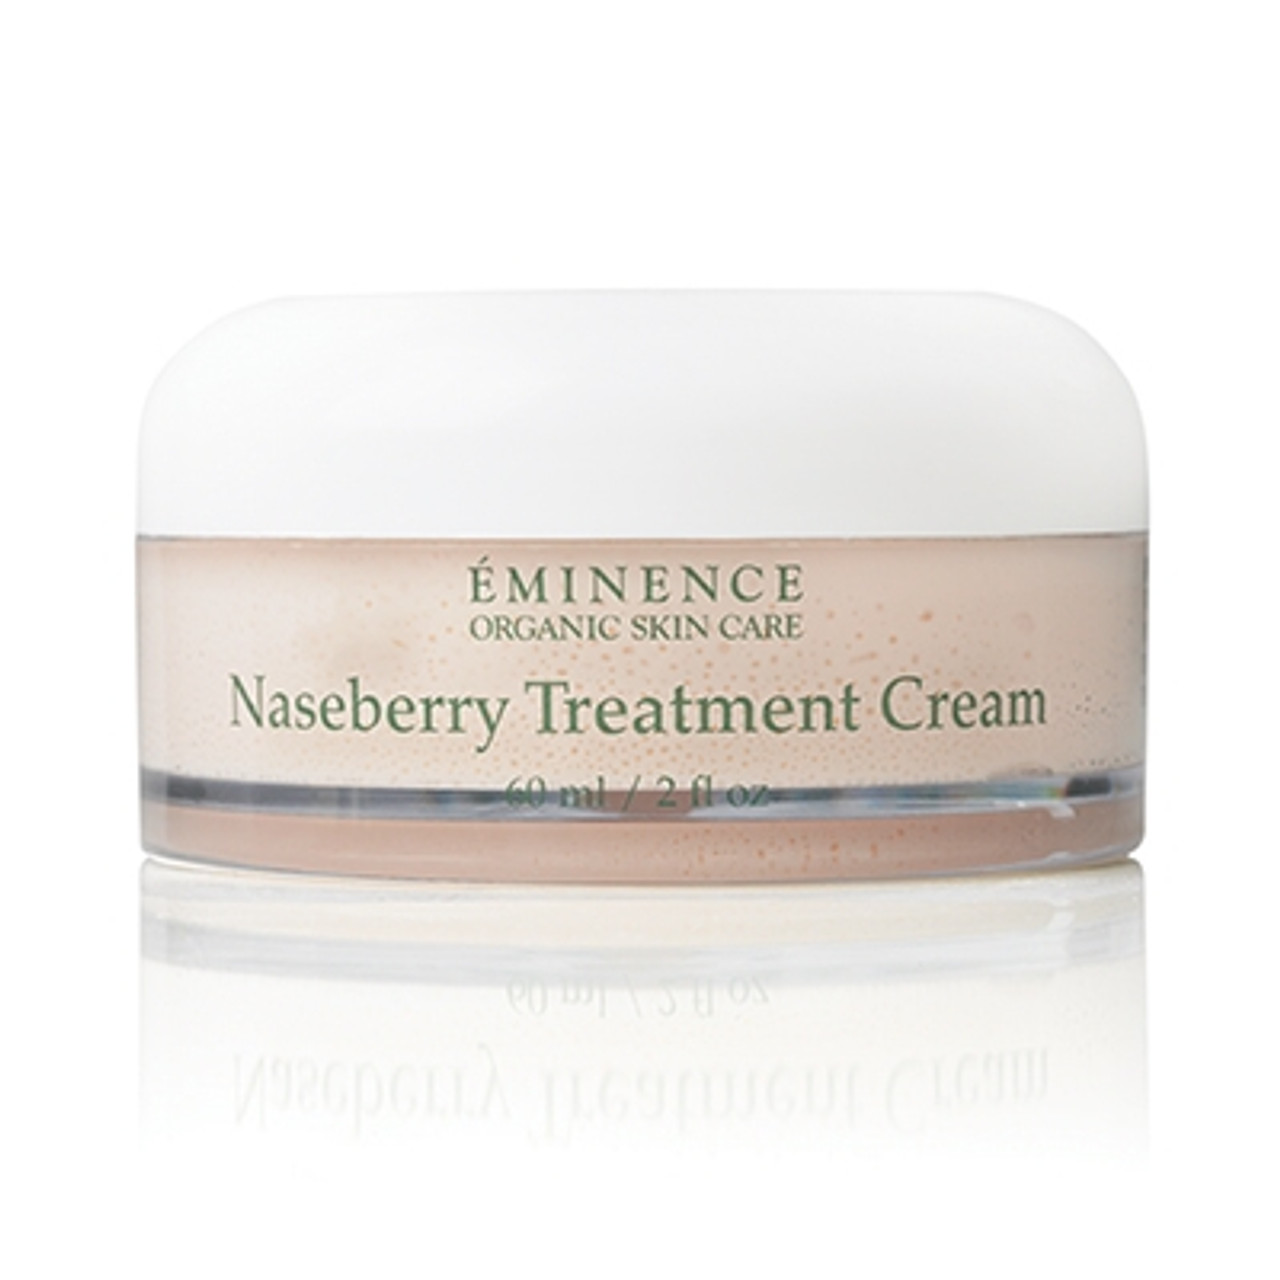 Eminence Naseberry Treatment Cream, 2 oz